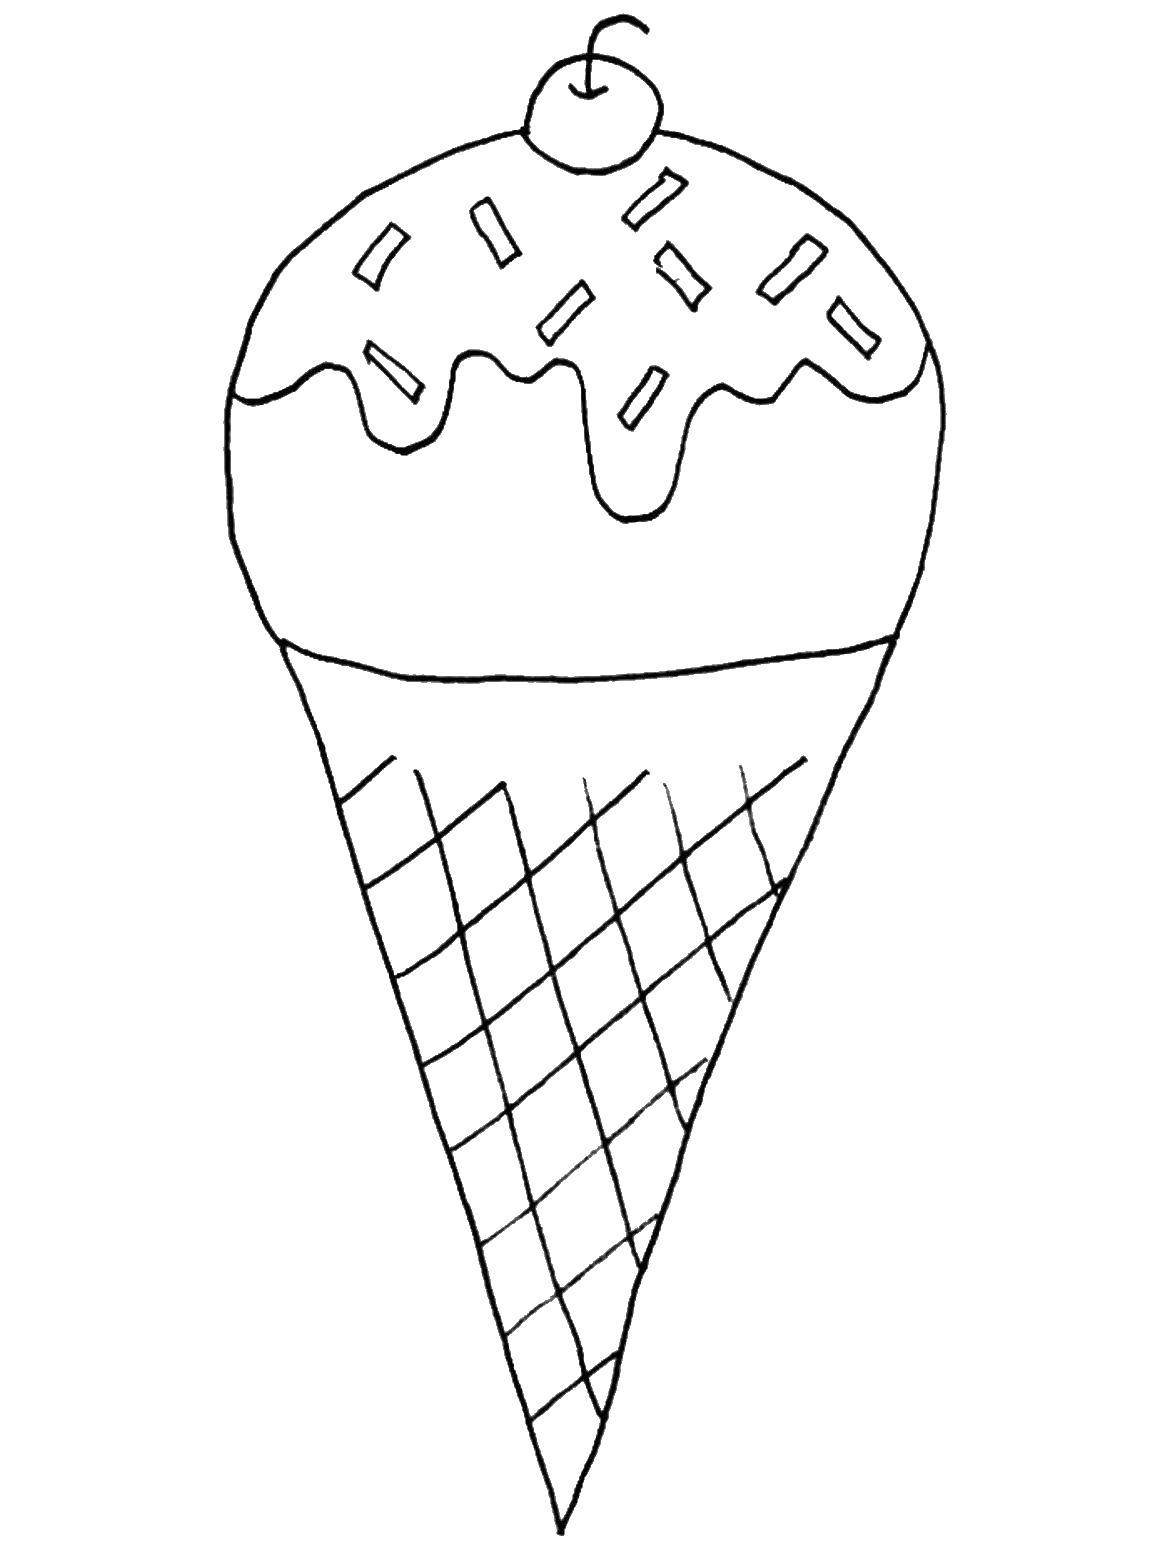 Название: Раскраска Мороженое с вишенкой. Категория: мороженое. Теги: мороженое, шариковое мороженое.